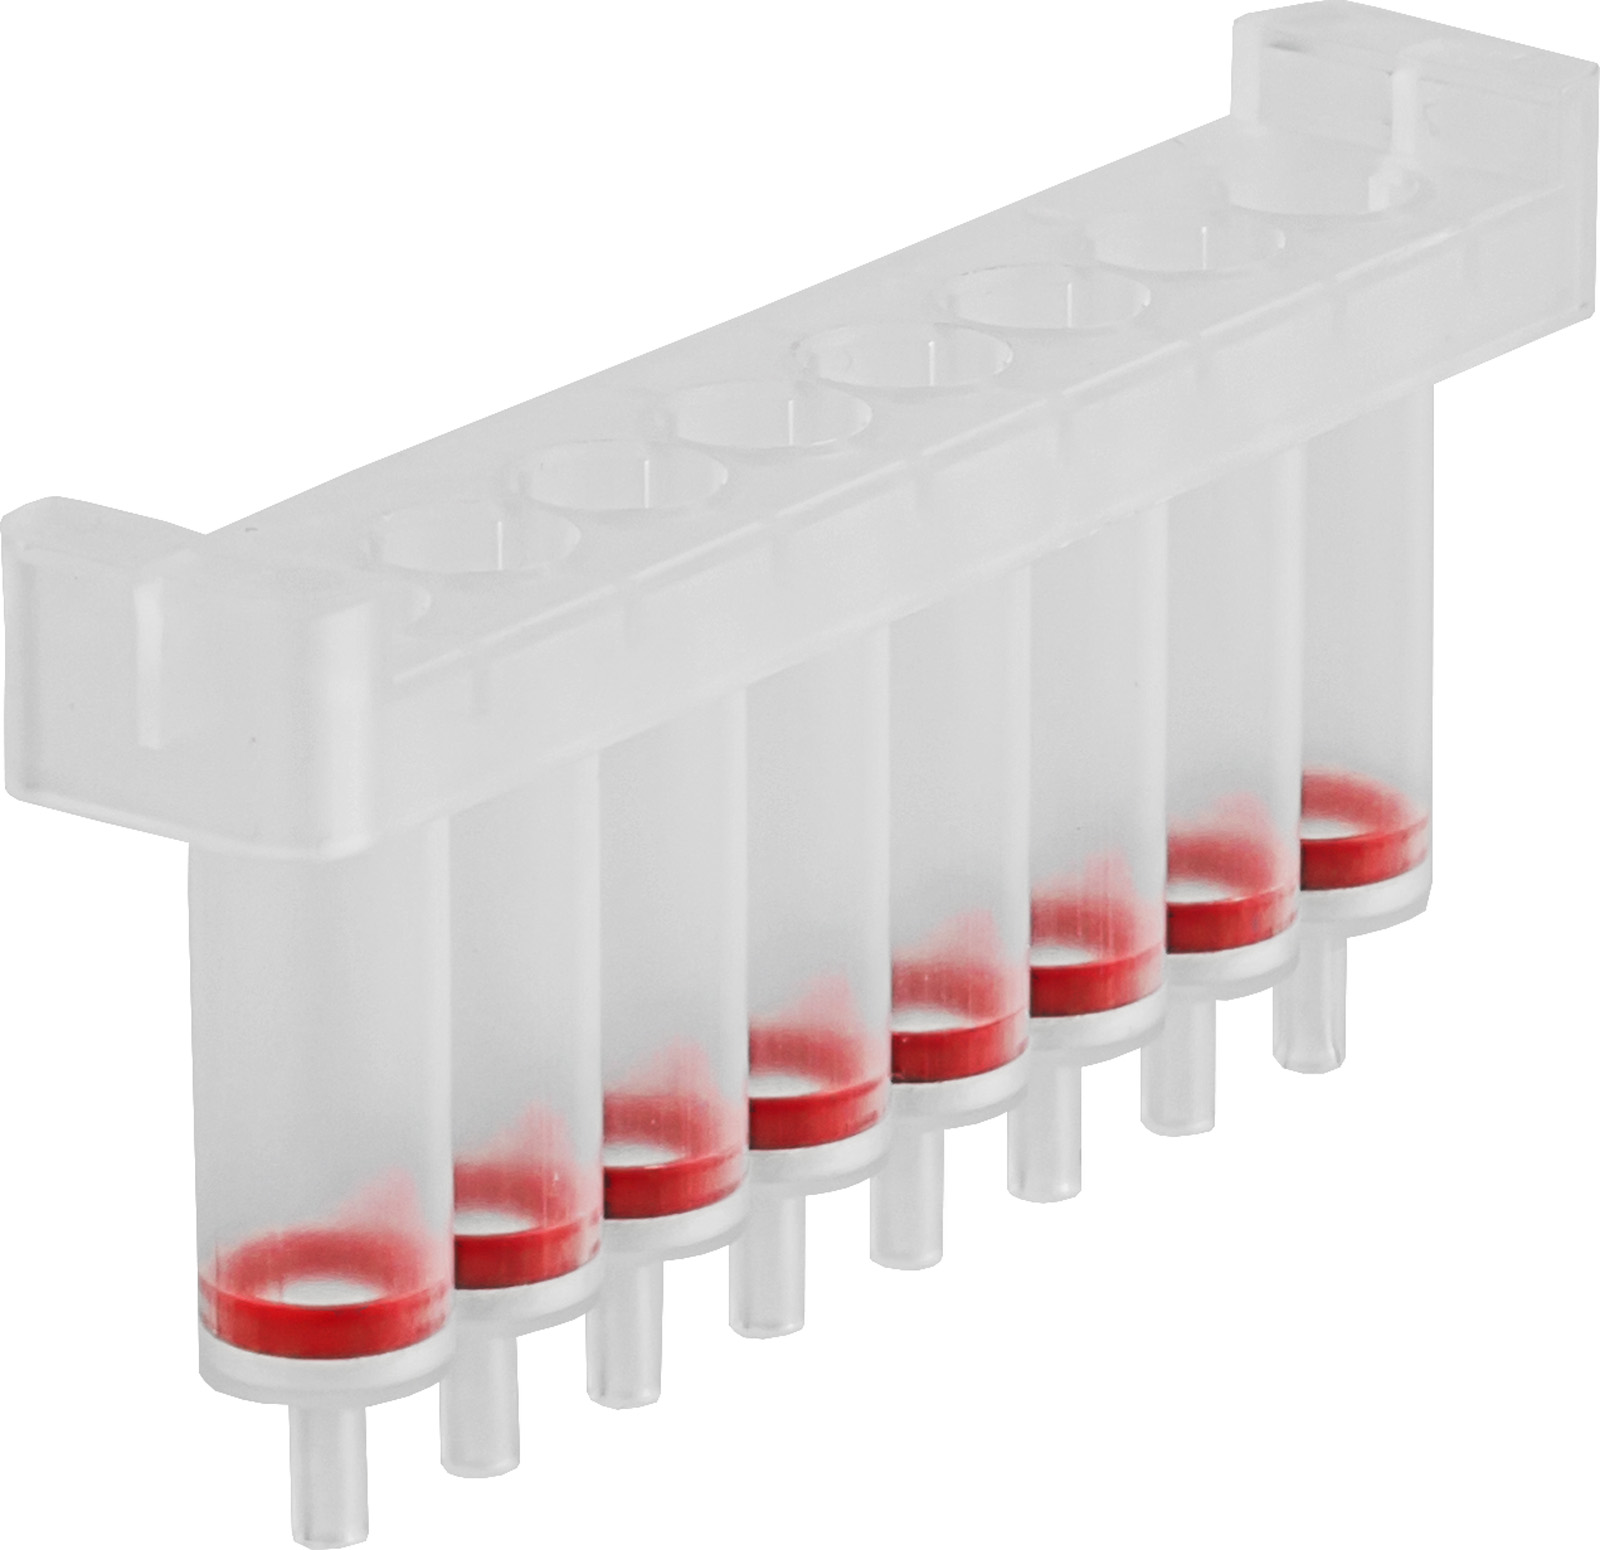 DNA z krwi i płynów biologicznych Ręczna bądź automatyczna izolacja (HTP) NucleoSpin 8 Blood Core Kit